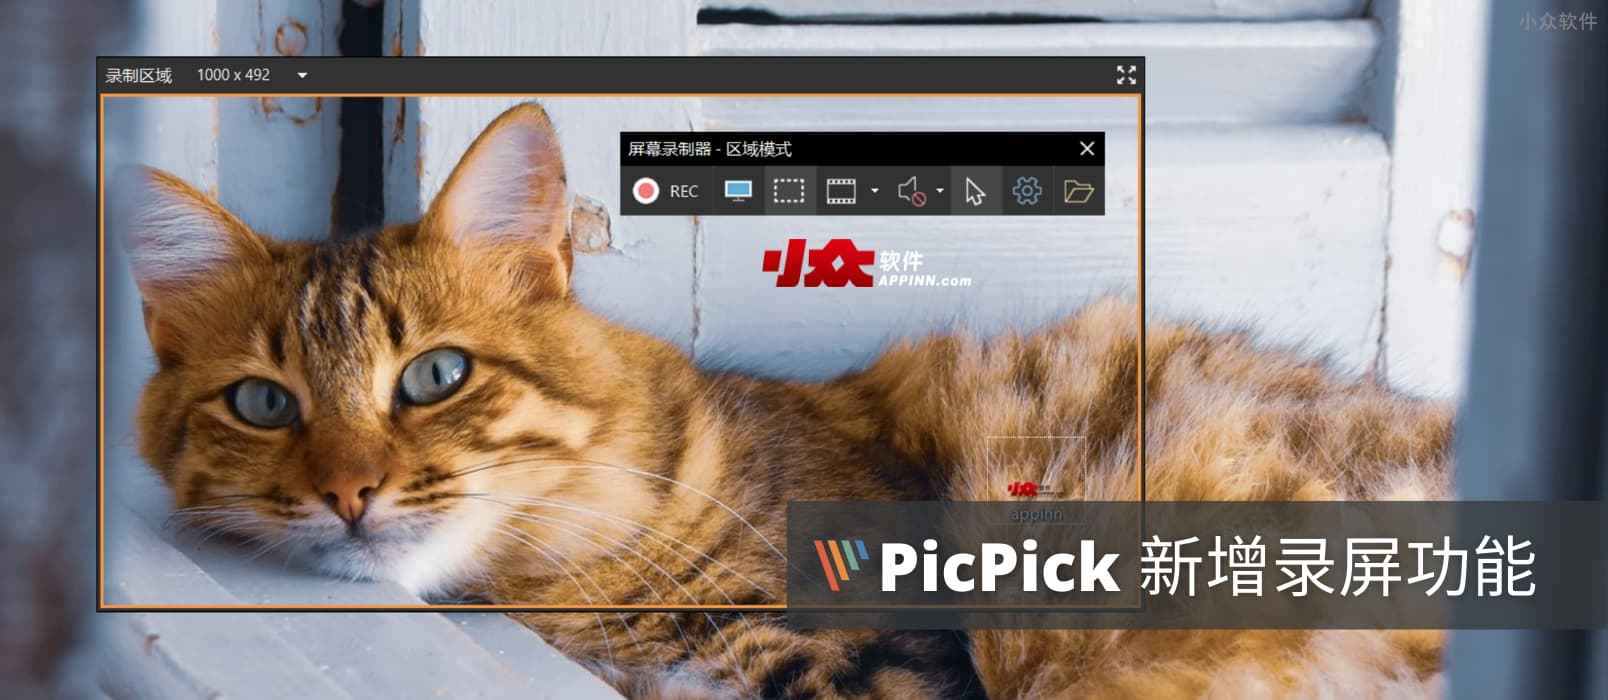 老牌截图工具 PicPick 更新，新增录屏功能，支持 MP4/GIF 格式